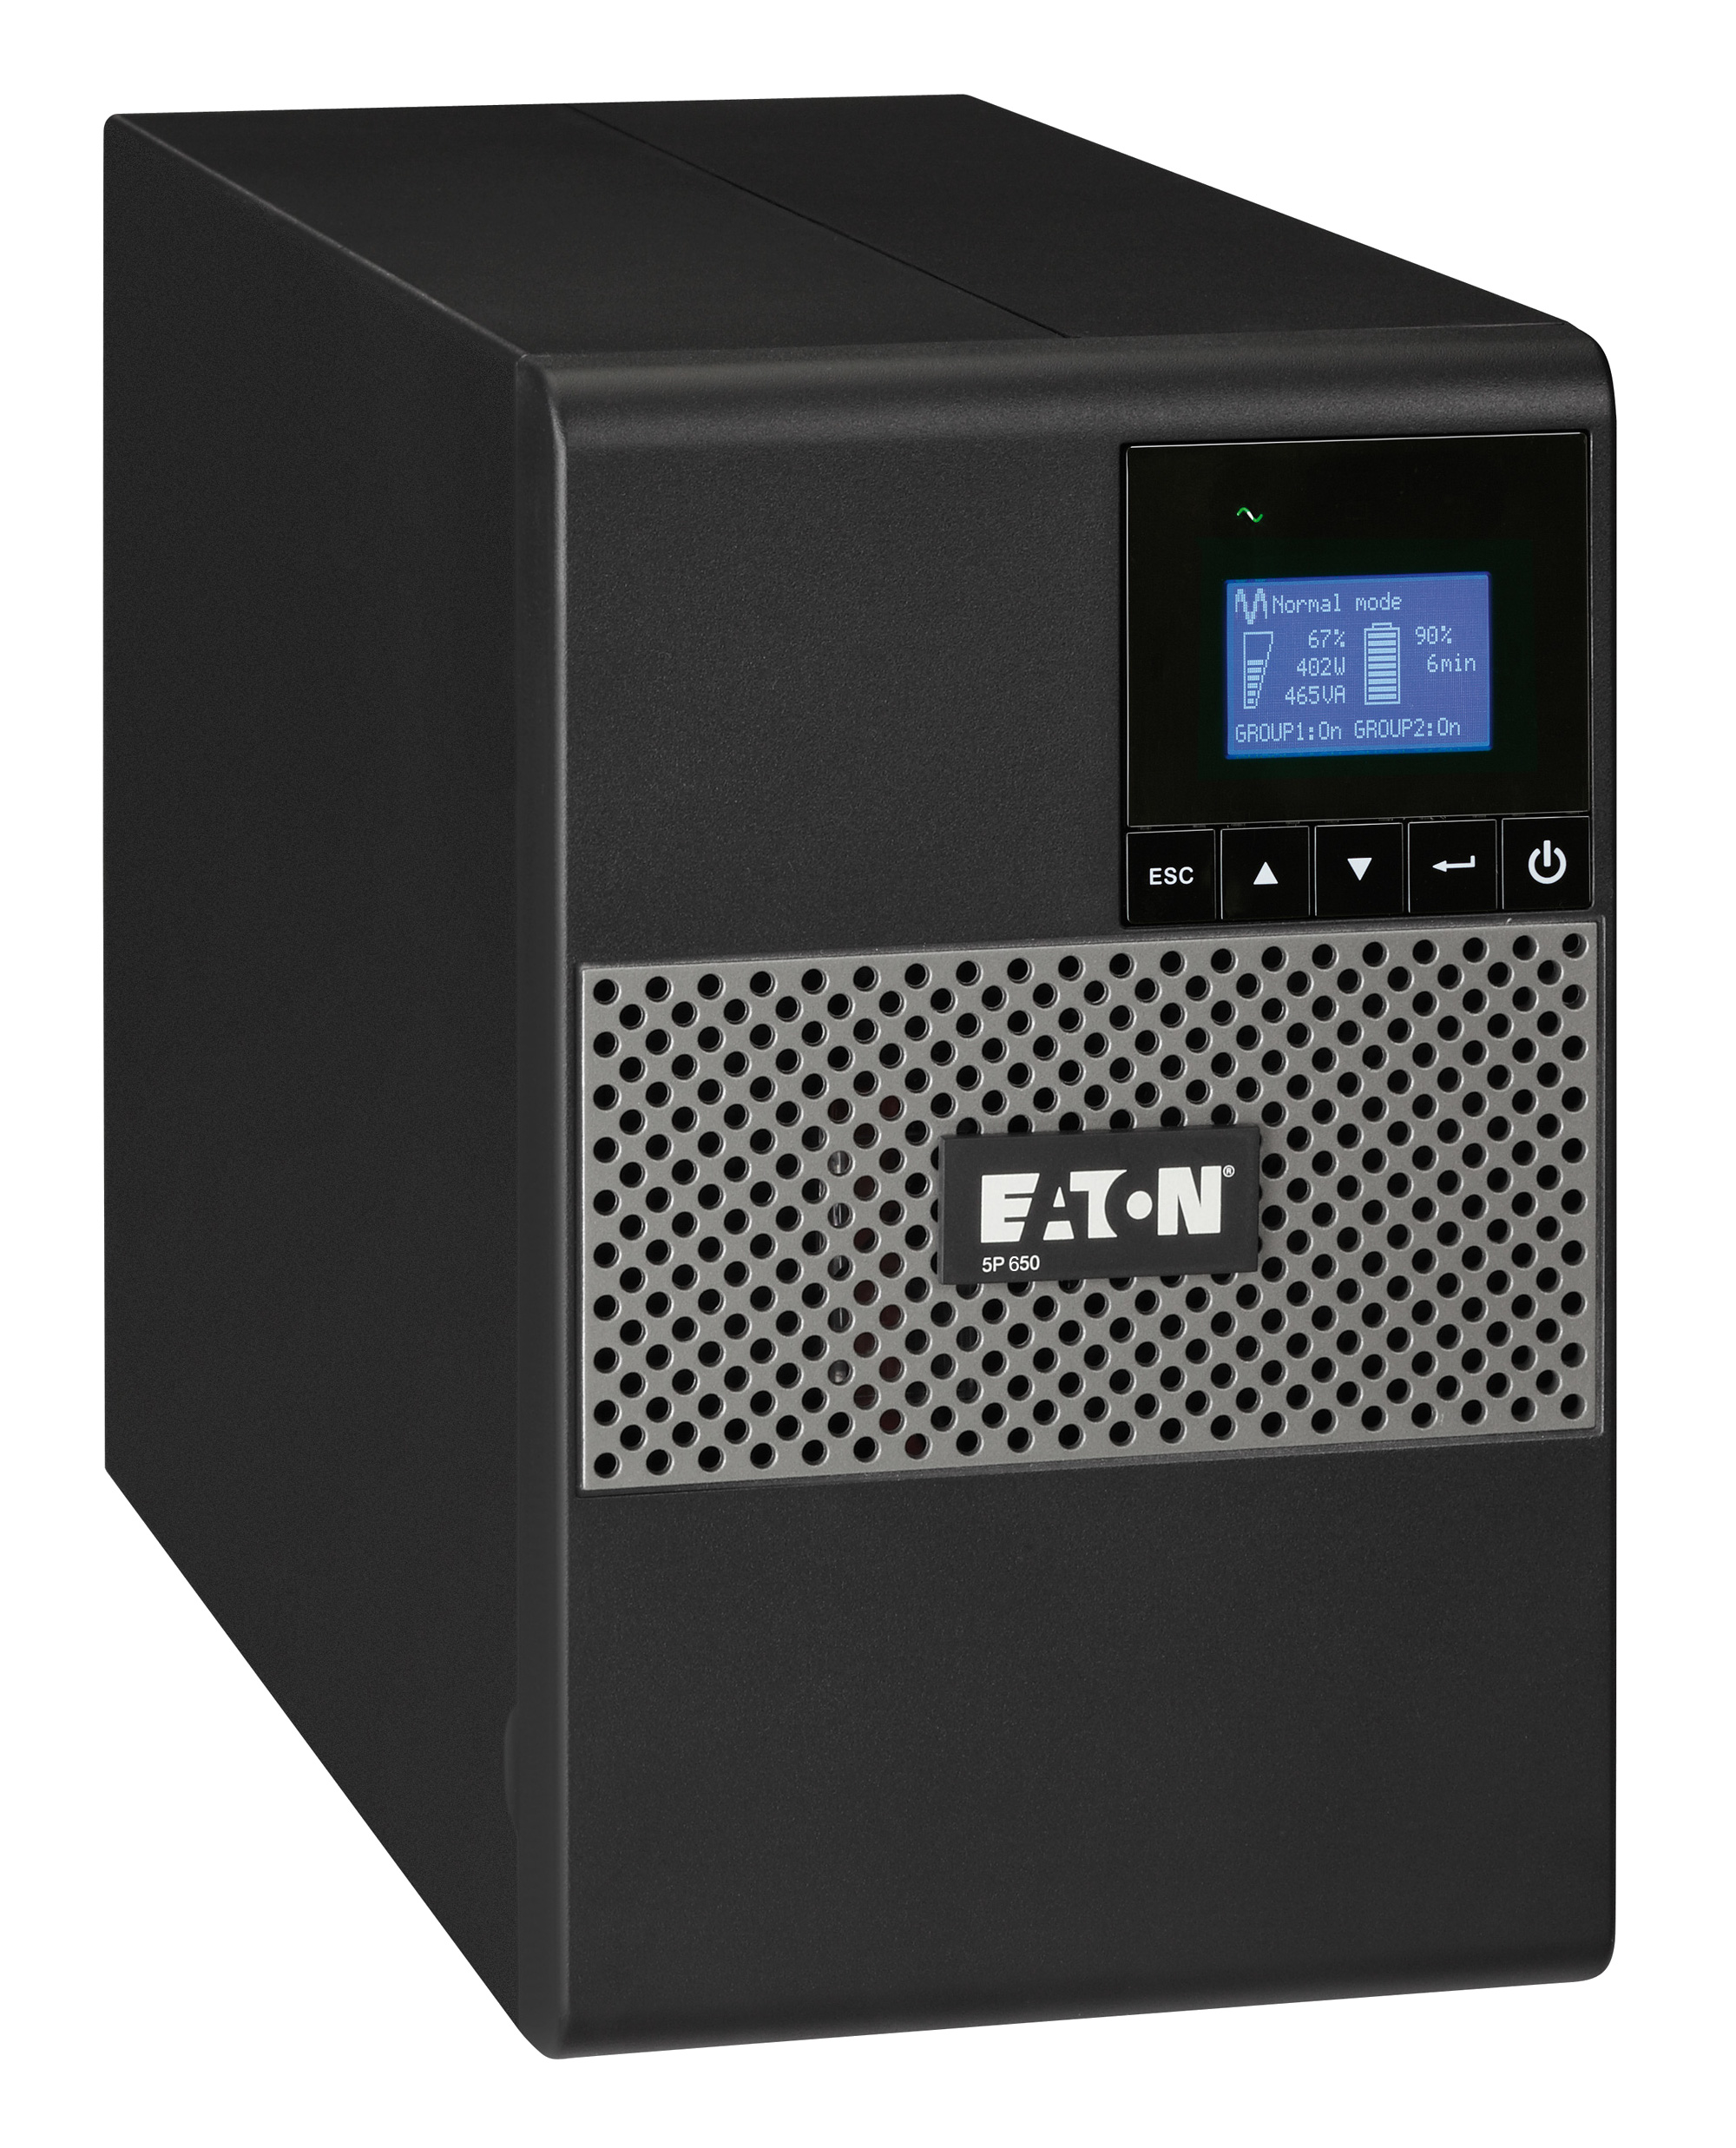 ИБП Eaton 5P 650i, 650VA, 420W, IEC, розеток - 4, USB, черный (5P650i)